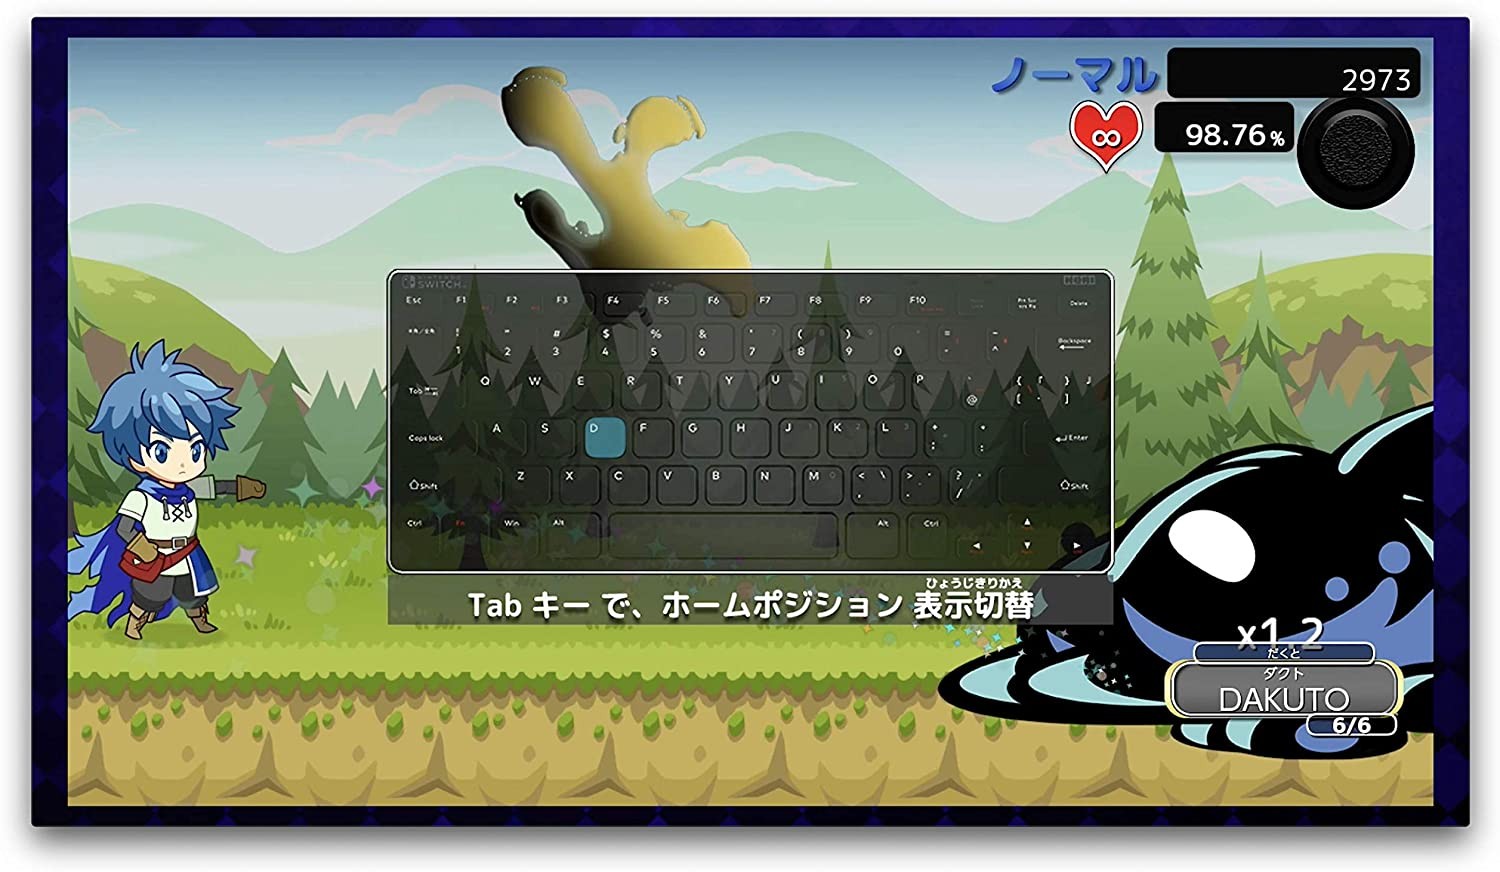 日本厂商为Switch推出专用打字练习游戏《打字冒险》